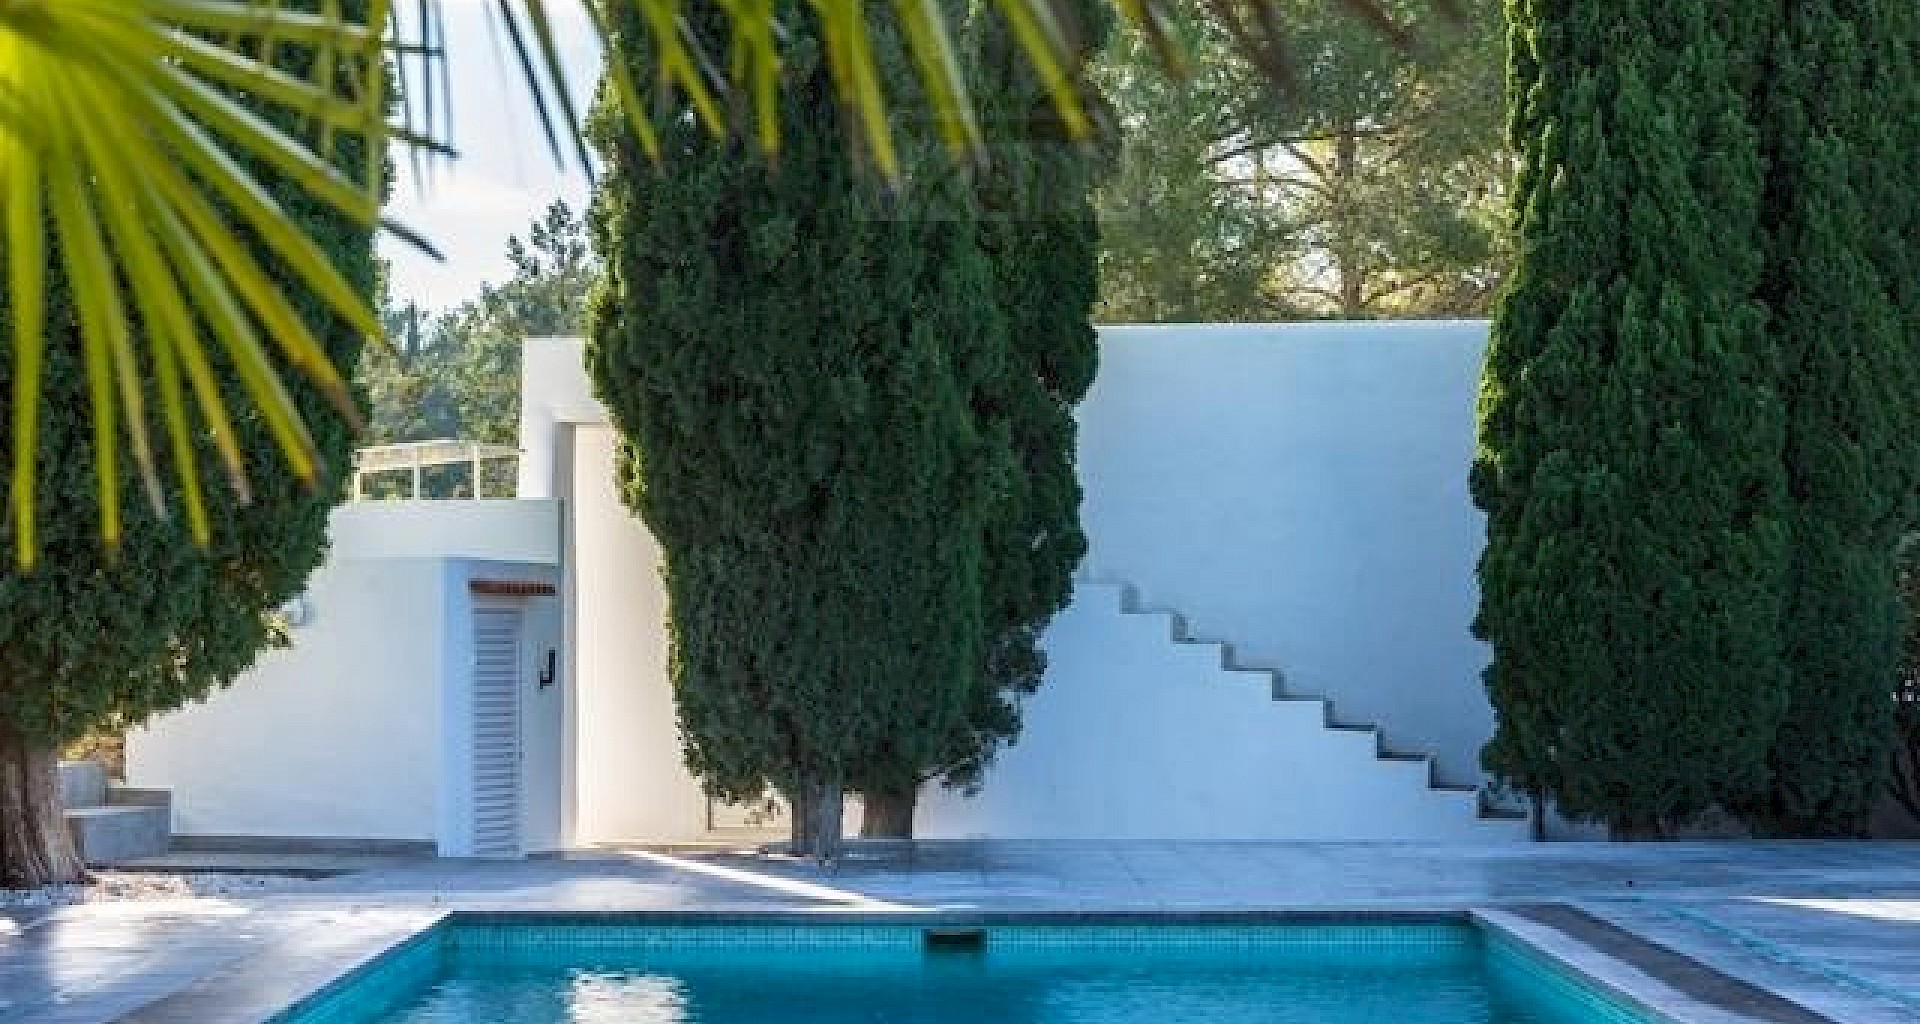 KROHN & LUEDEMANN Casa completamente renovada en Ibiza con piscina y mucha privacidad Benimussa (16)